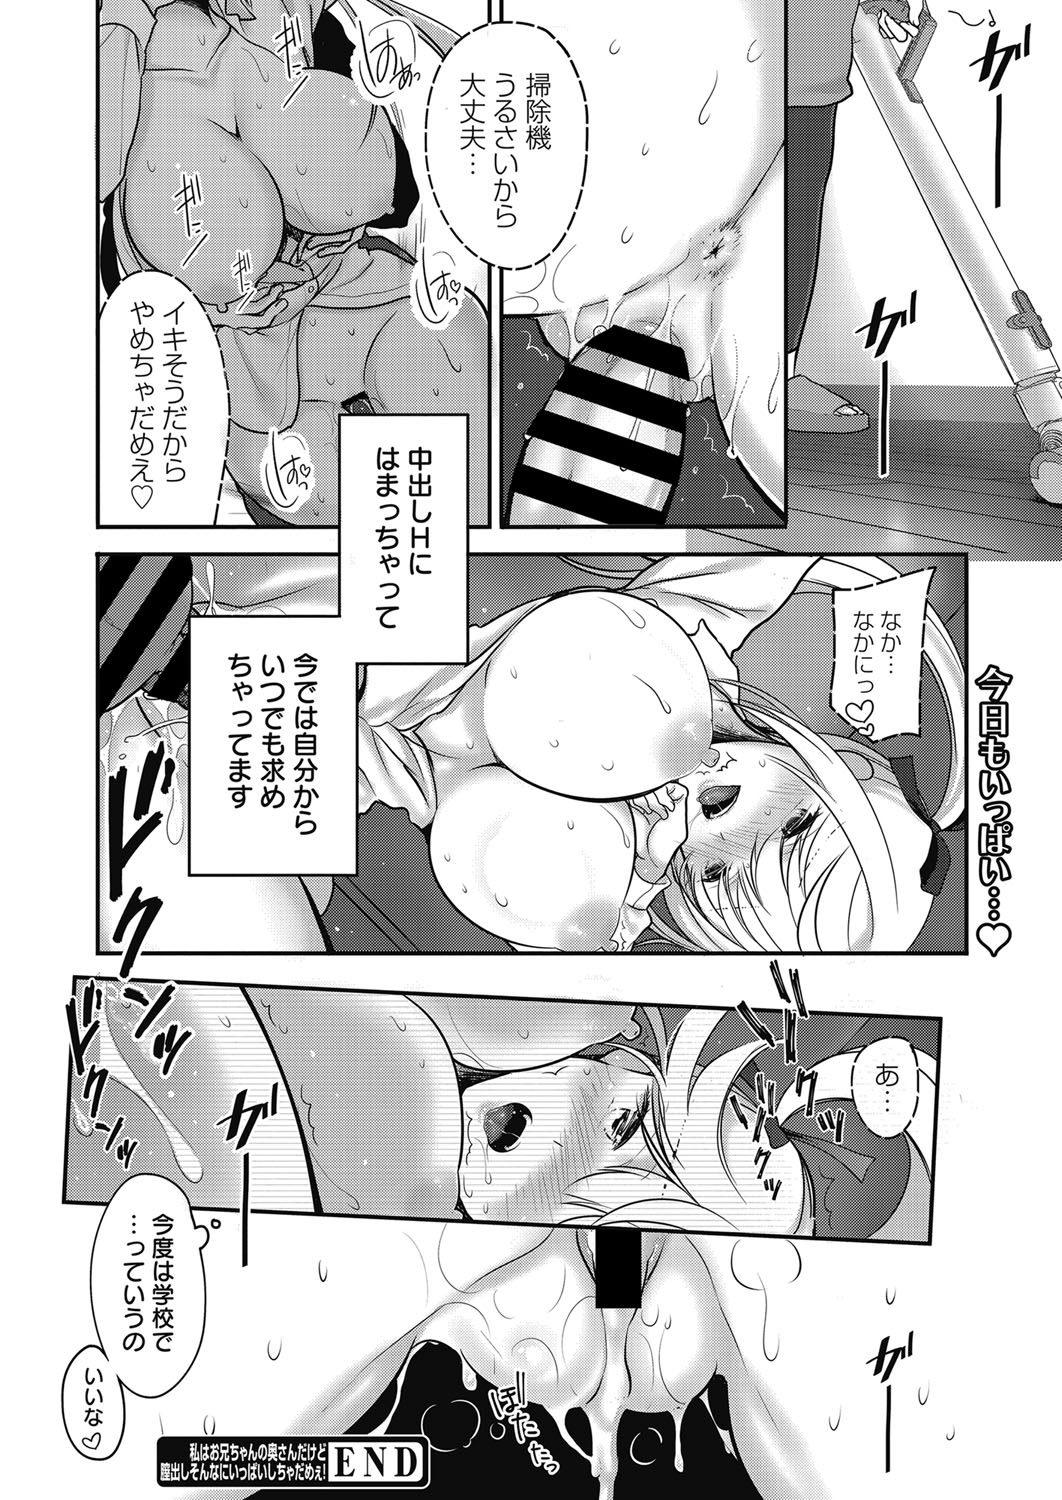 web 漫画ばんがいち Vol.27